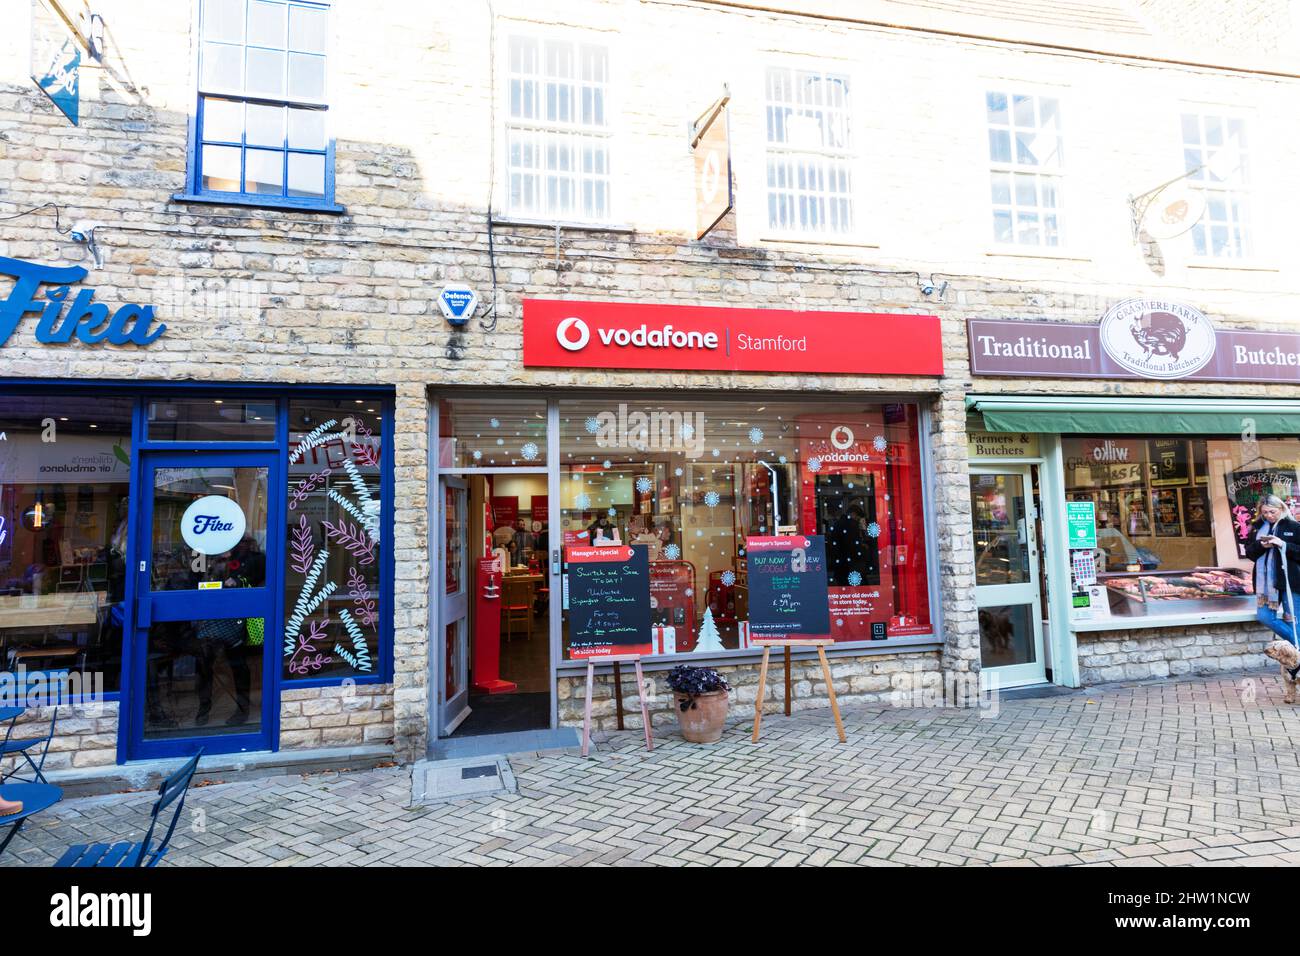 Boutique Vodaphone, boutique Vodaphone, panneau Vodaphone, Stamford, Lincolnshire, Royaume-Uni, Angleterre, Stamford Town, Stamford UK, Stamford Lincolnshire, Banque D'Images